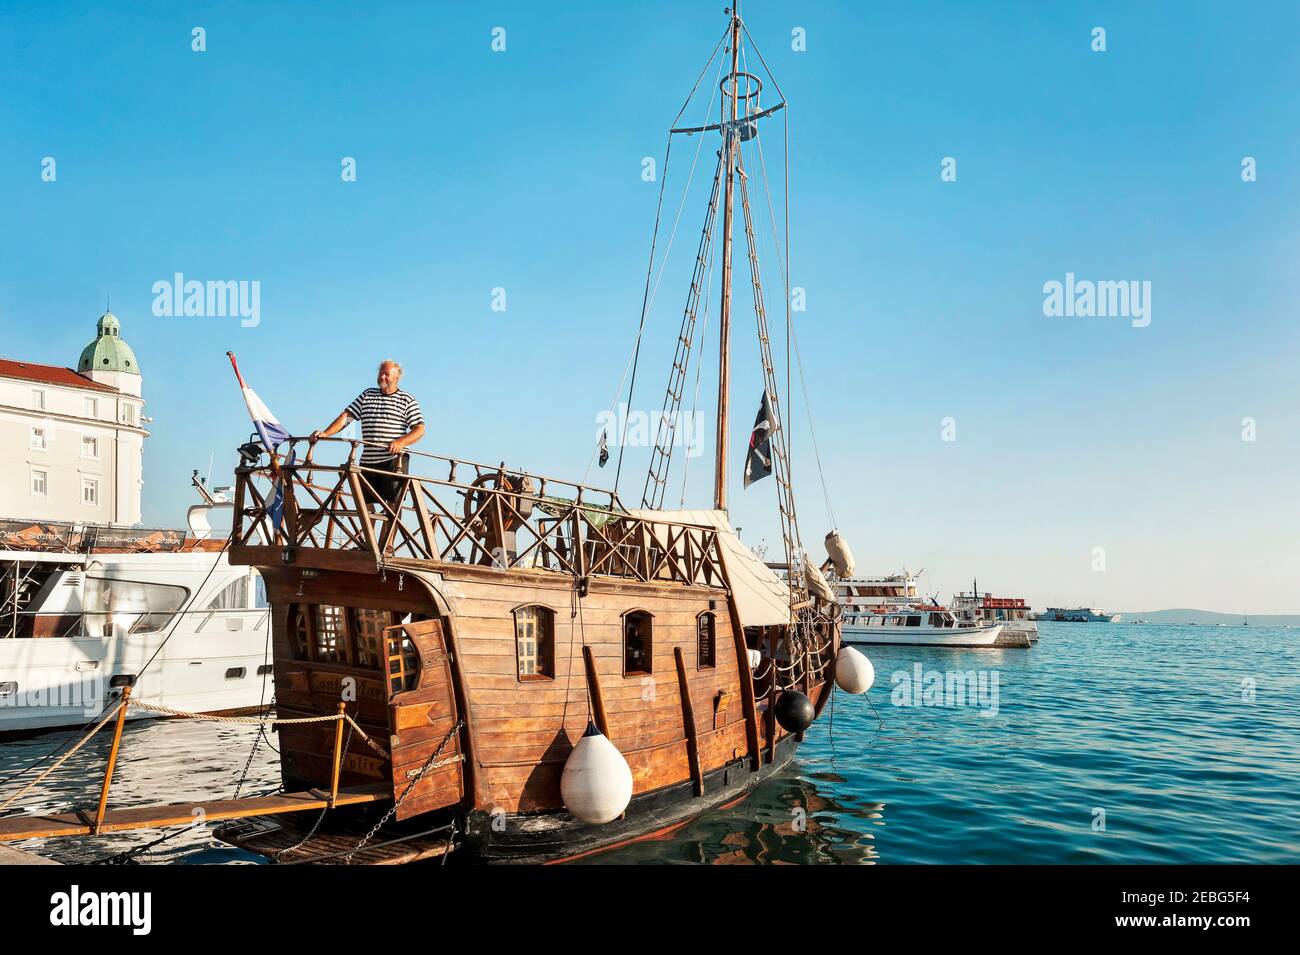 Spalato - Croato - Dalmazia - 26 agosto 2018: Vecchia barca a vela in legno con capitano nel porto di Spalato, Croazia Foto Stock